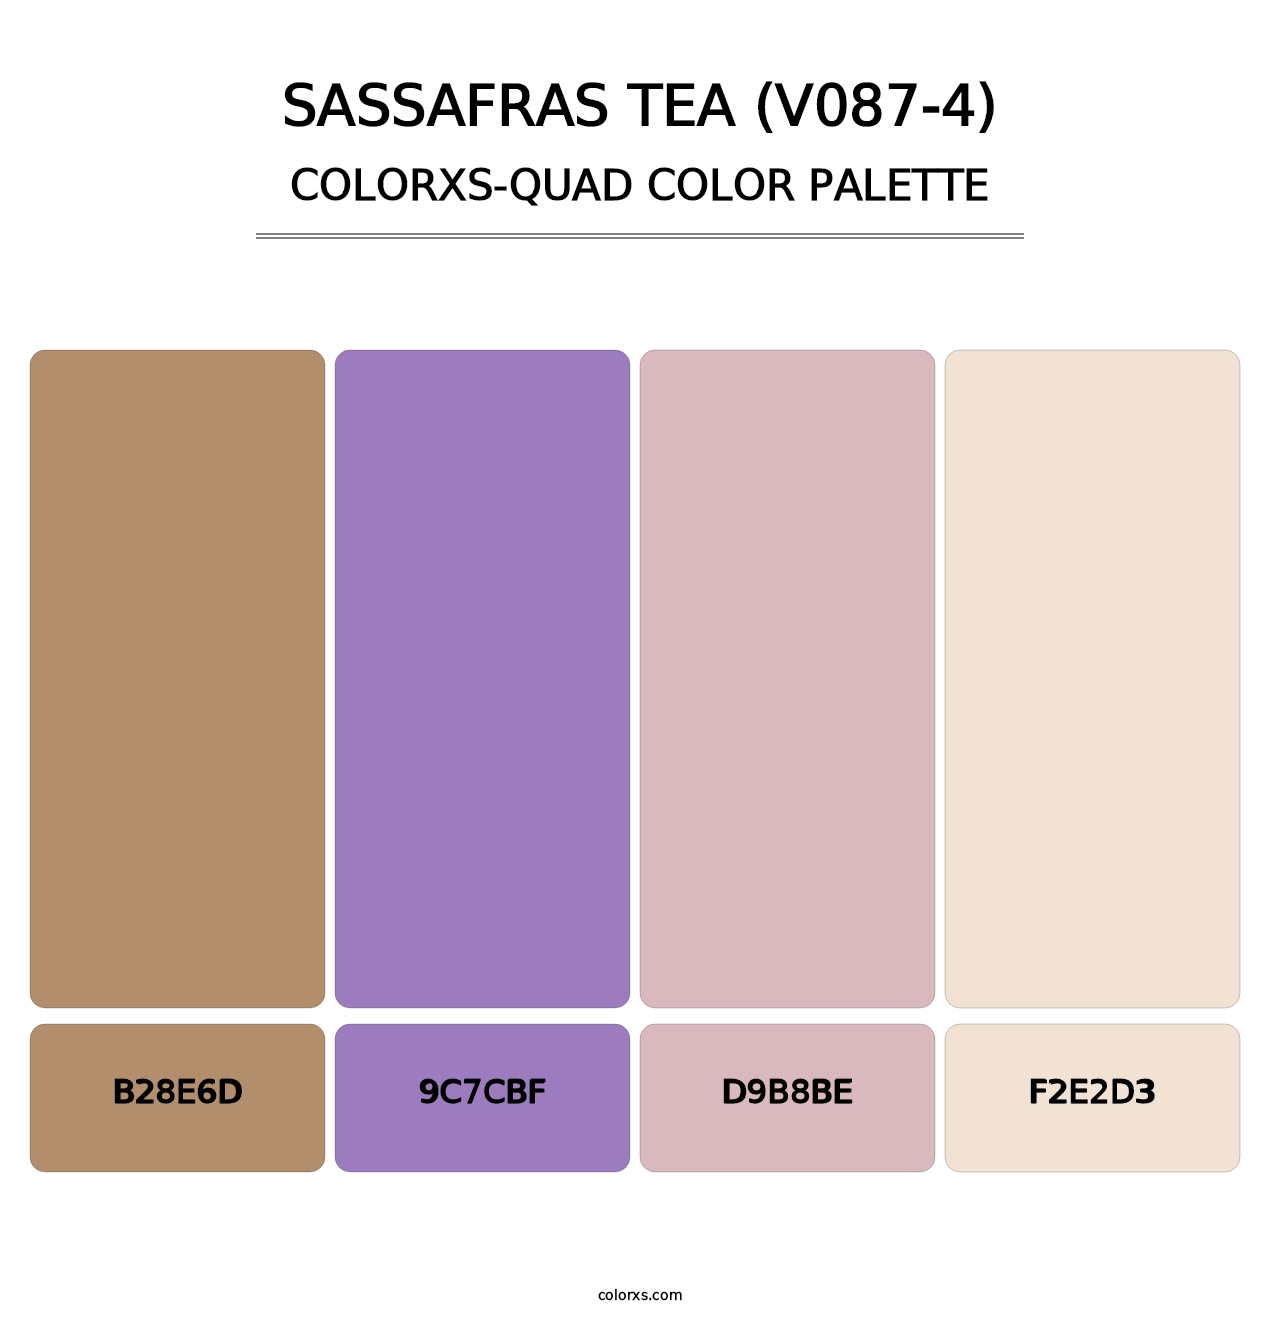 Sassafras Tea (V087-4) - Colorxs Quad Palette